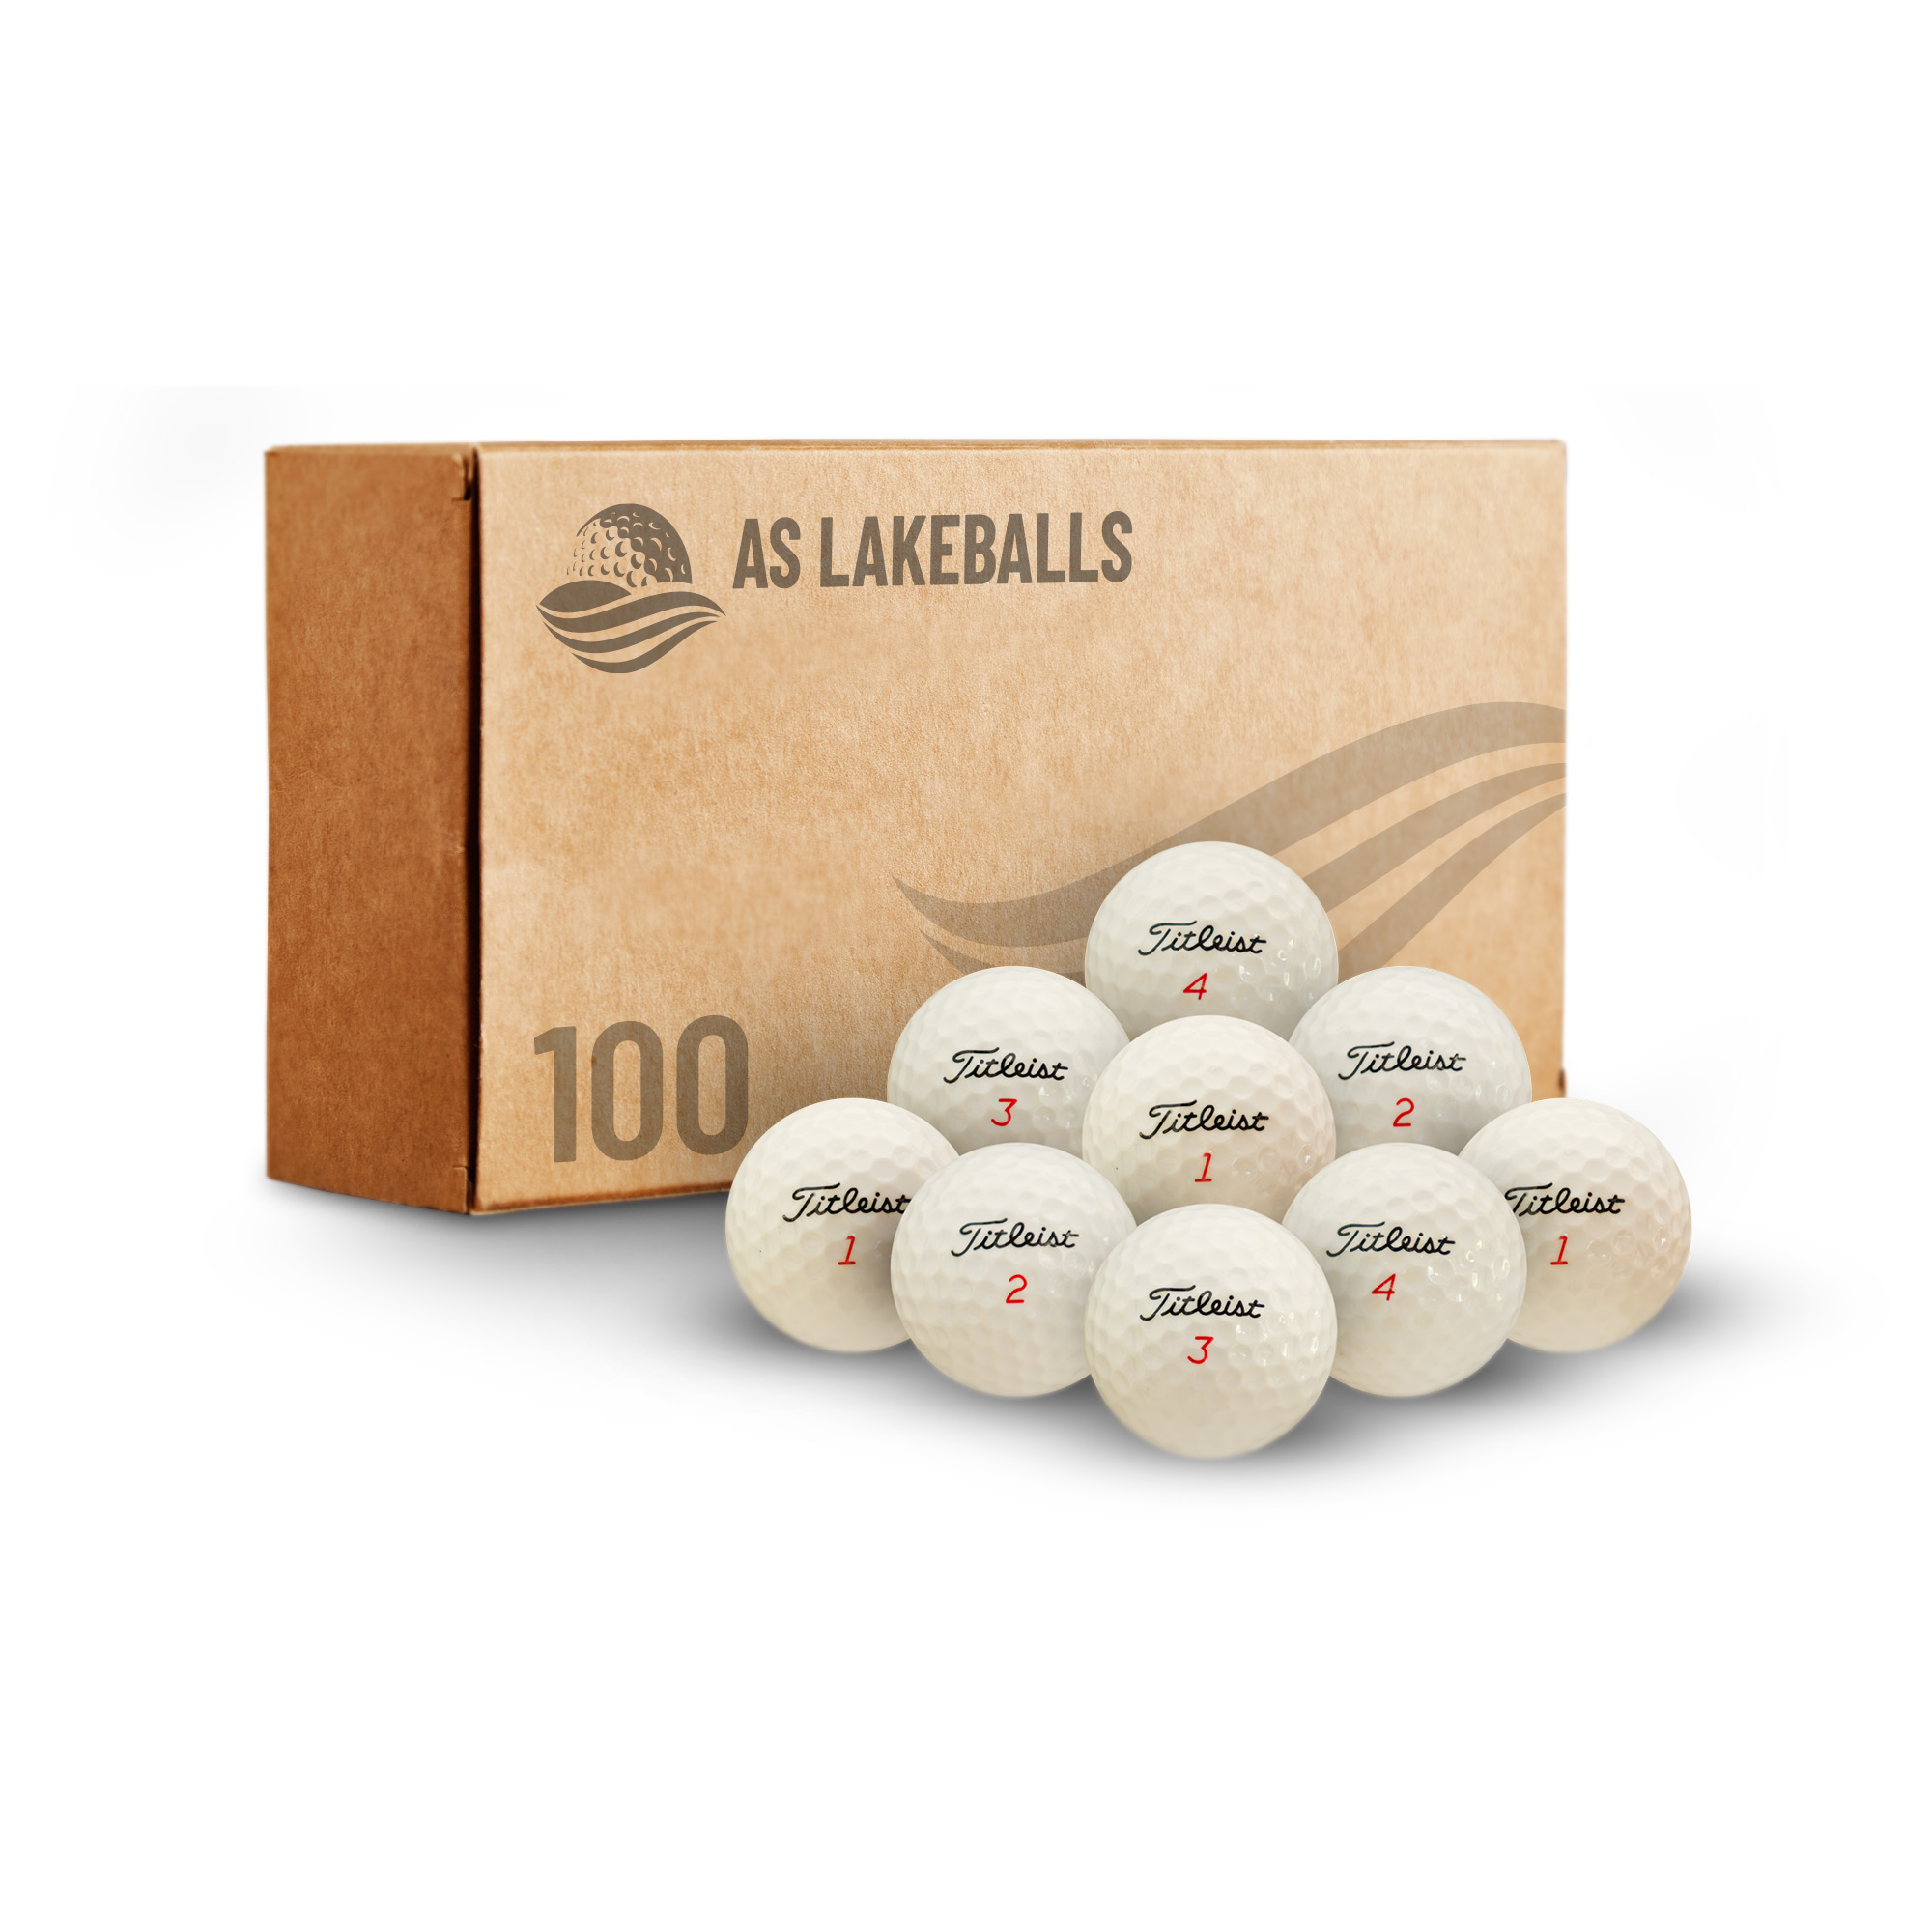 100 Titleist Mix AA-AAA bei AS Lakeballs günstig kaufen